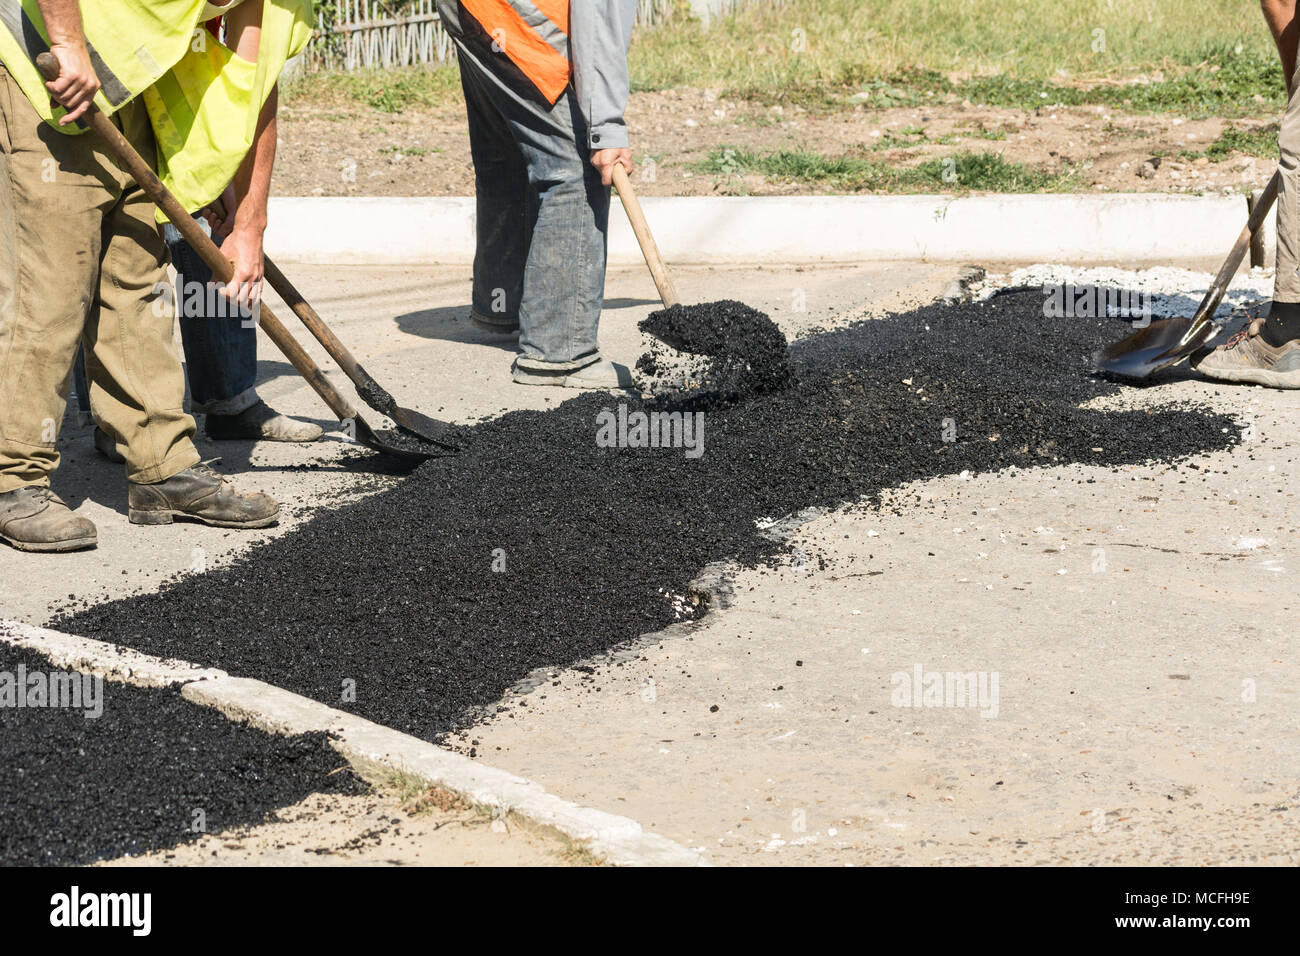 Detalles de reparación de carreteras. Los trabajadores se quedan dormidos con asfalto caliente fosos en la carretera. Foto de stock